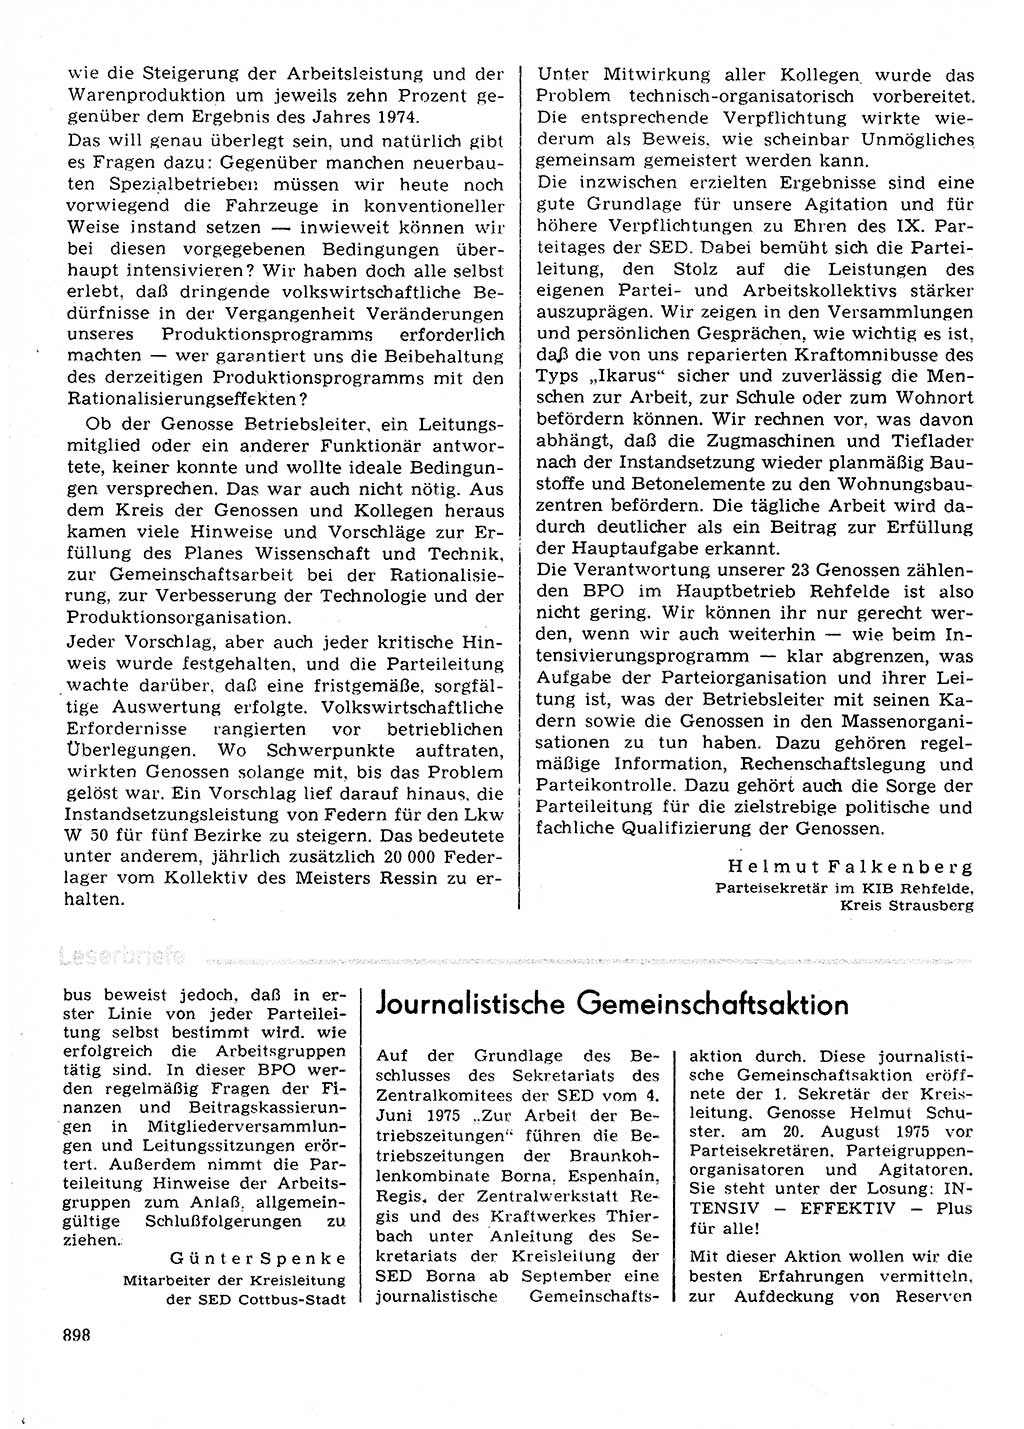 Neuer Weg (NW), Organ des Zentralkomitees (ZK) der SED (Sozialistische Einheitspartei Deutschlands) für Fragen des Parteilebens, 30. Jahrgang [Deutsche Demokratische Republik (DDR)] 1975, Seite 898 (NW ZK SED DDR 1975, S. 898)